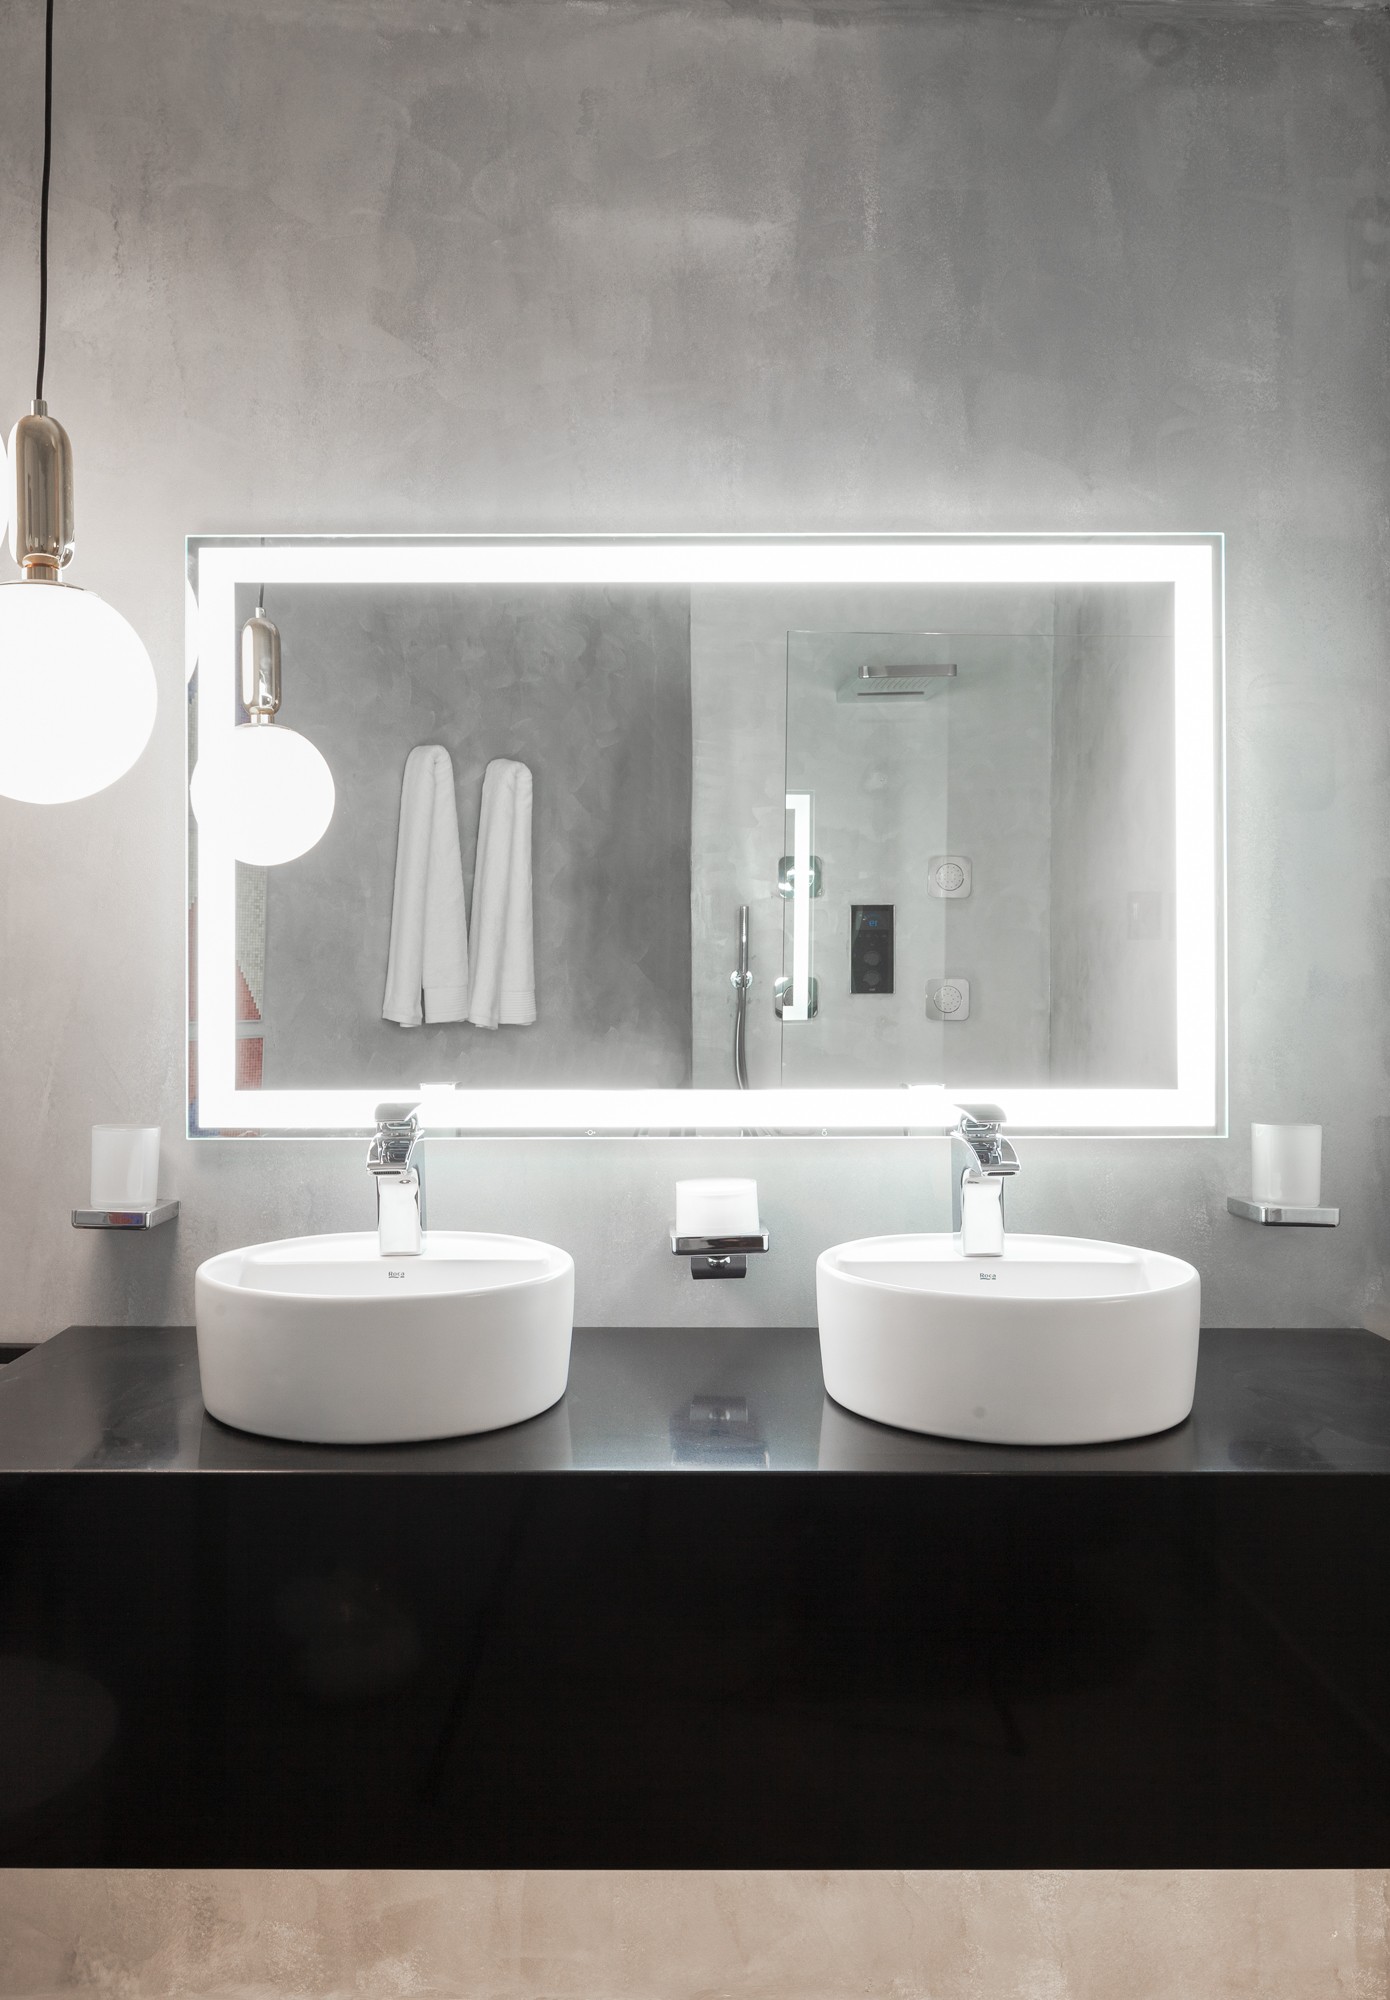 O arquiteto Ignacio Uliart usou o espelho Iridia 1000 x 700, com iluminação em LED, em que é possível regular a intensidade da luz para ampliar o espaço do banheiro (Foto: Divulgação)